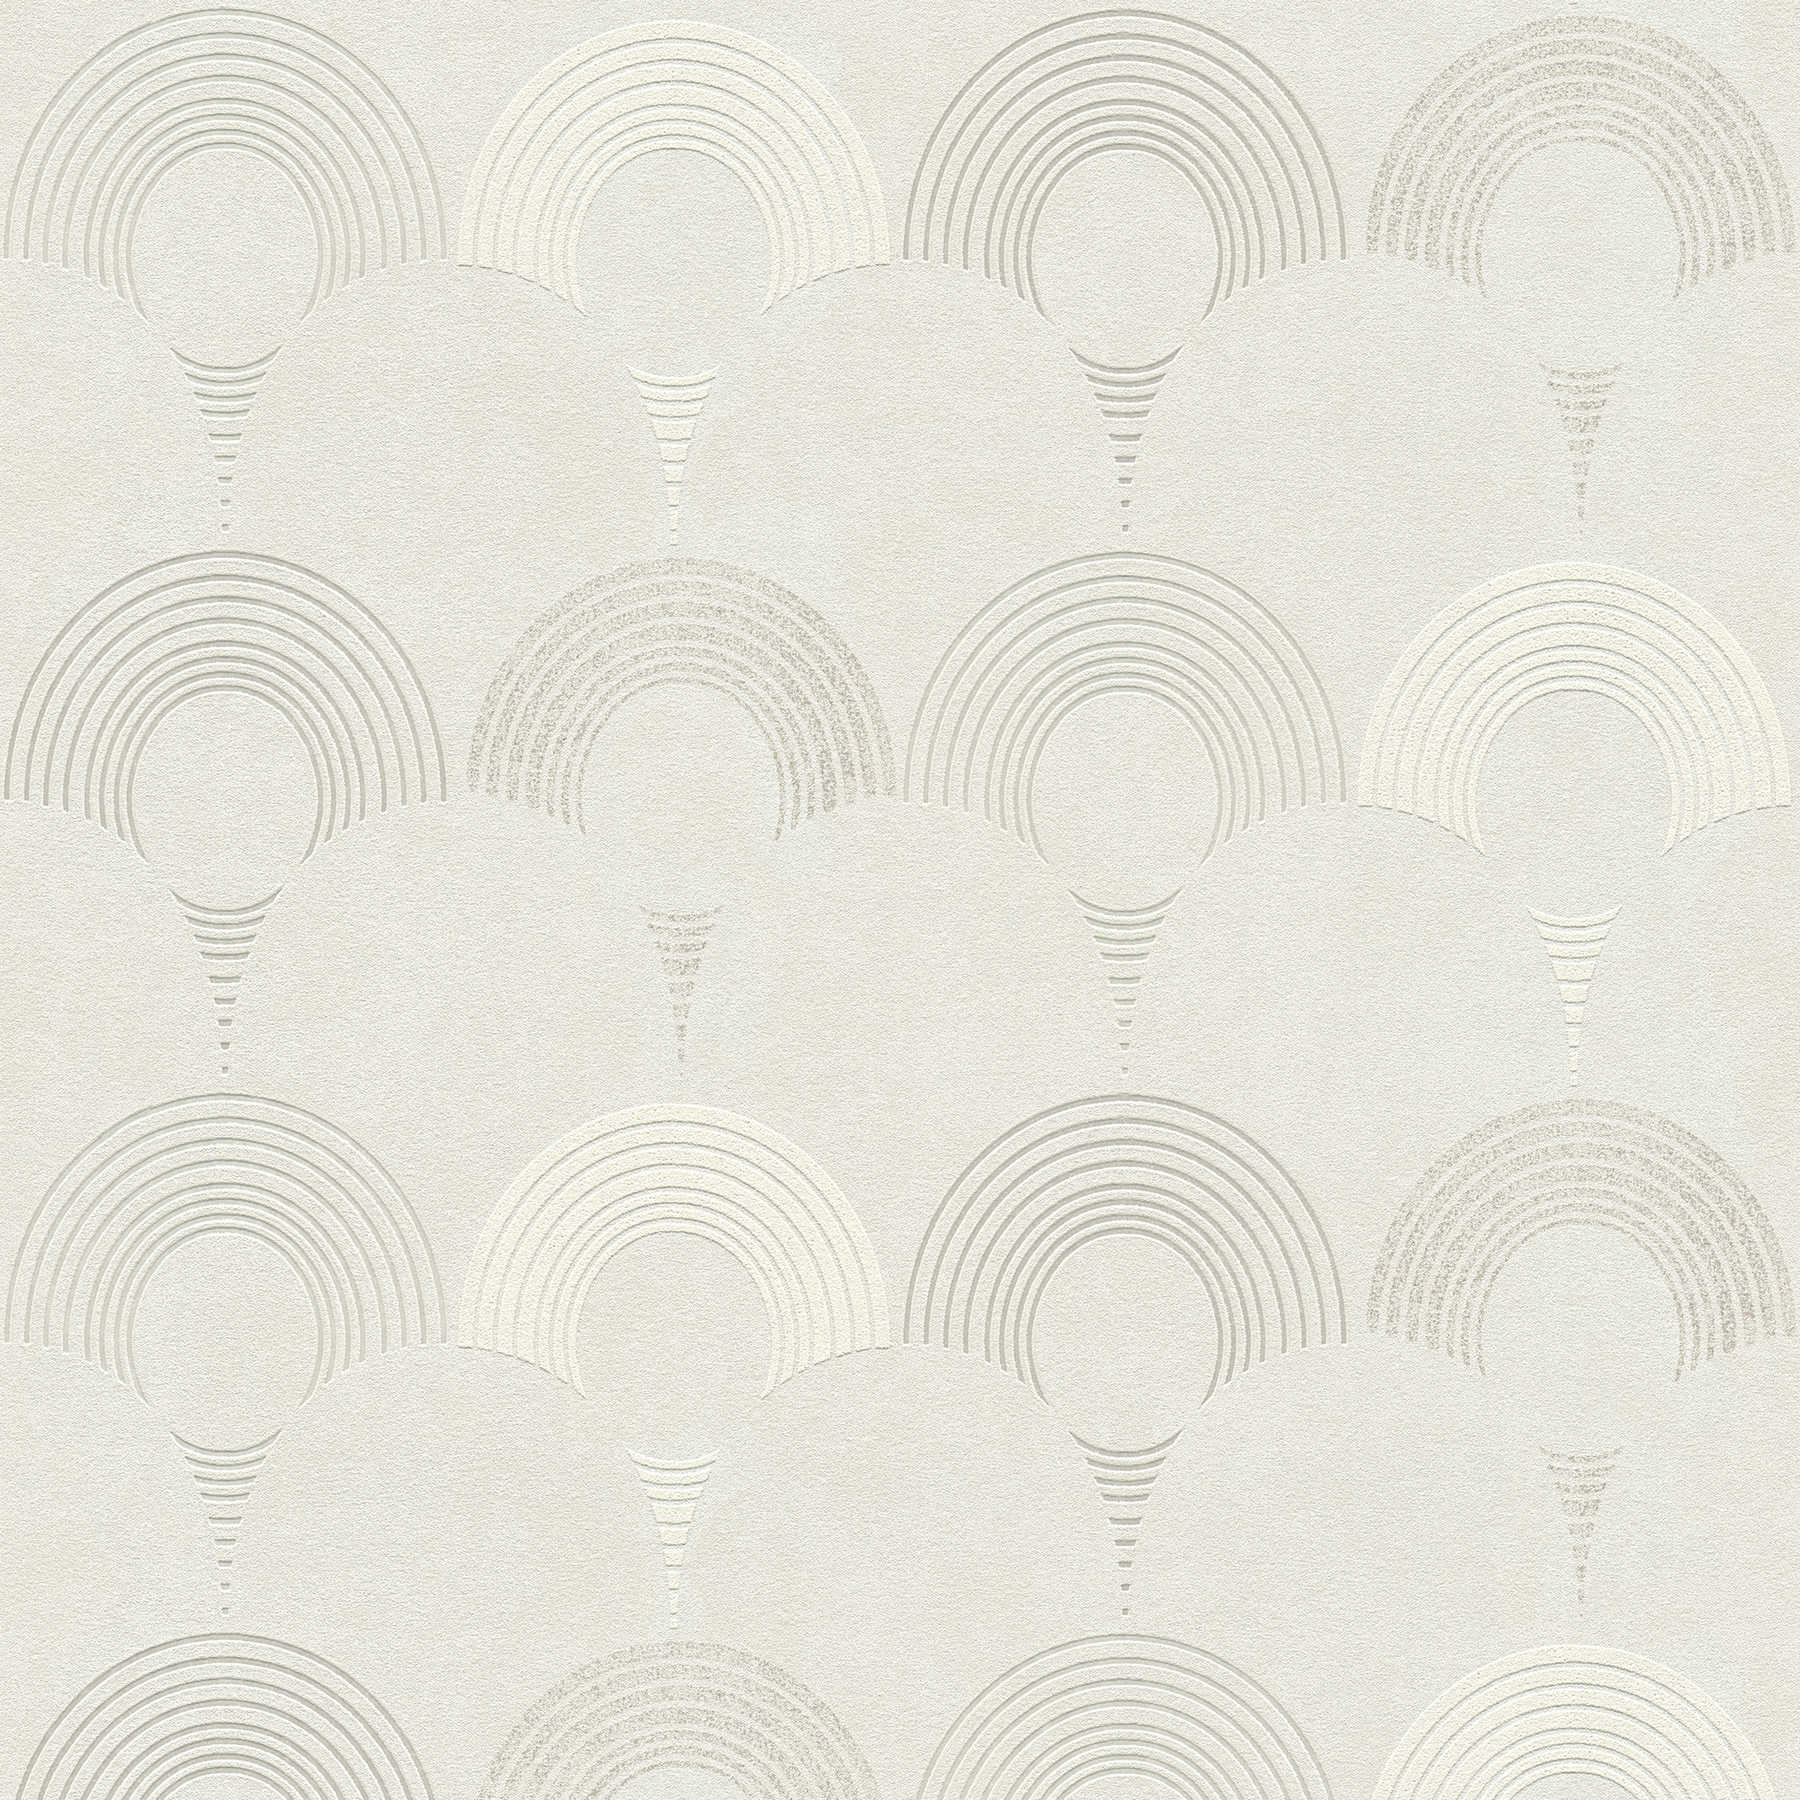         Papel pintado no tejido de estilo retro, con motivos geométricos circulares - gris, plata, blanco
    